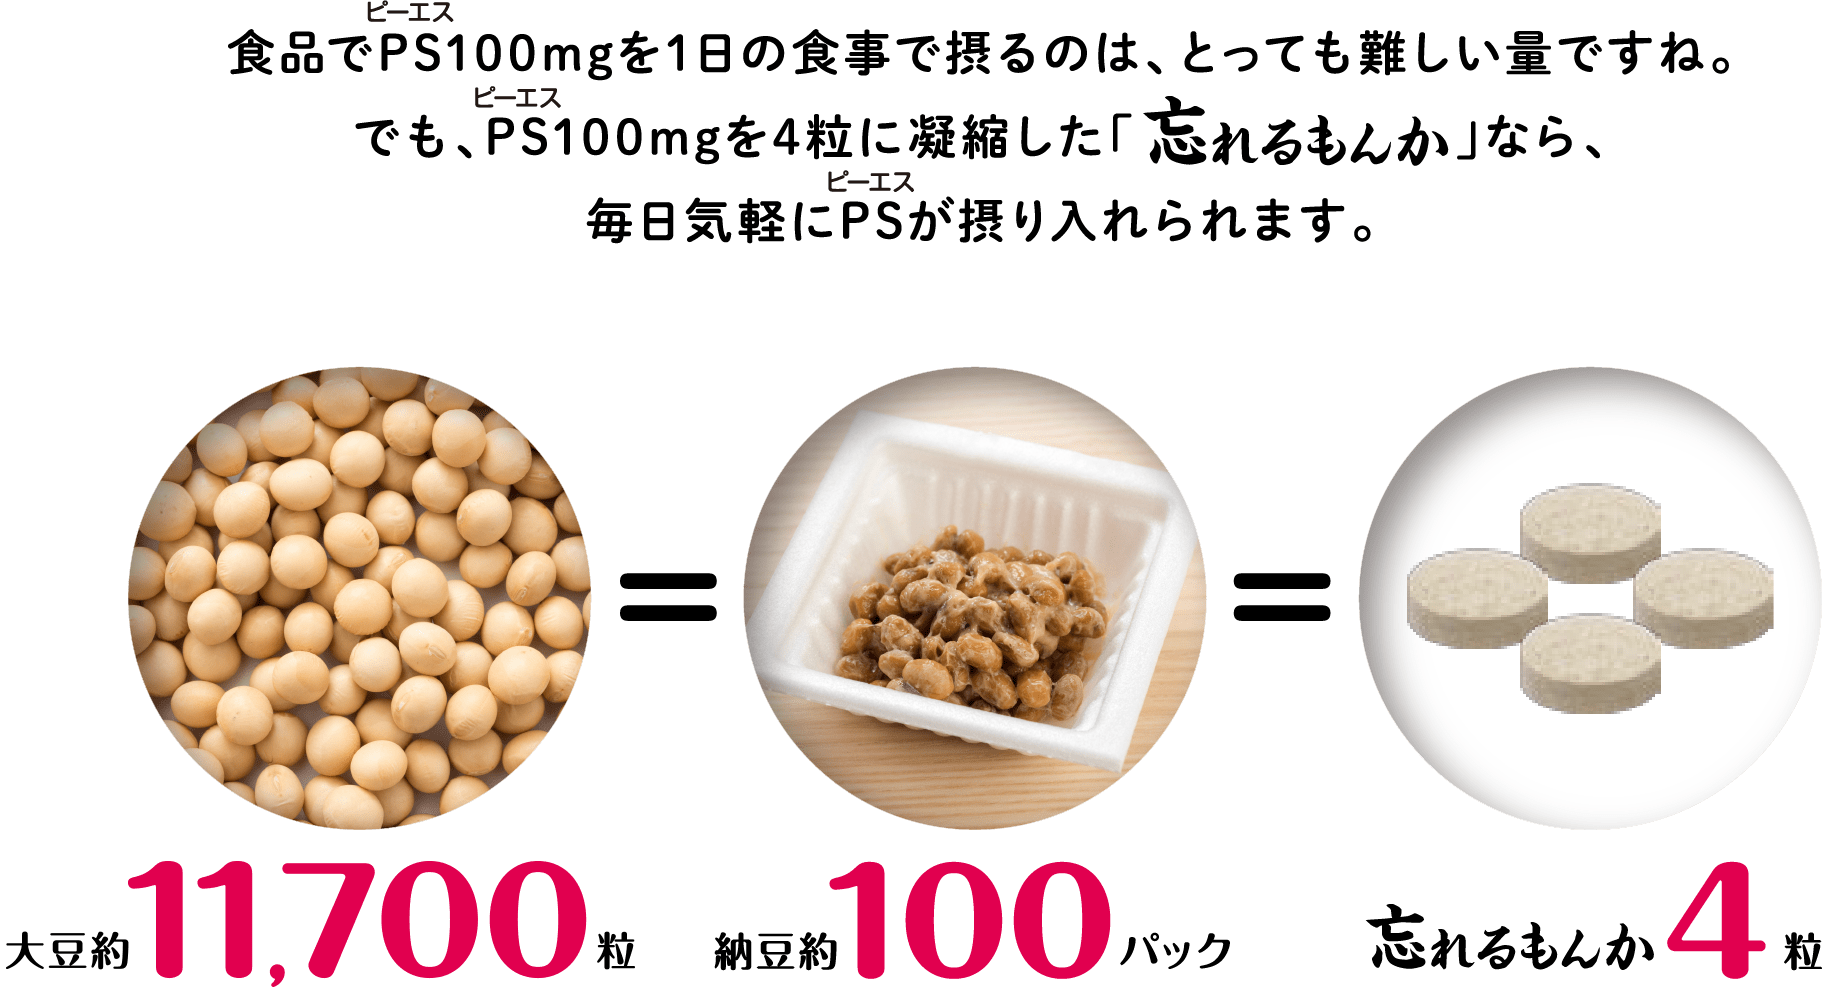 食品でPS(ホスファチジルセリン)100mgを1日の食事で摂るのは、とっても難しい量ですね。でもPS(ホスファチジルセリン)100mgを4粒に凝縮した「忘れるもんか」なら、毎日気軽にPS(ホスファチジルセリン)が摂り入れられます。 大豆11,700粒=納豆約100パック=忘れるもんか4粒